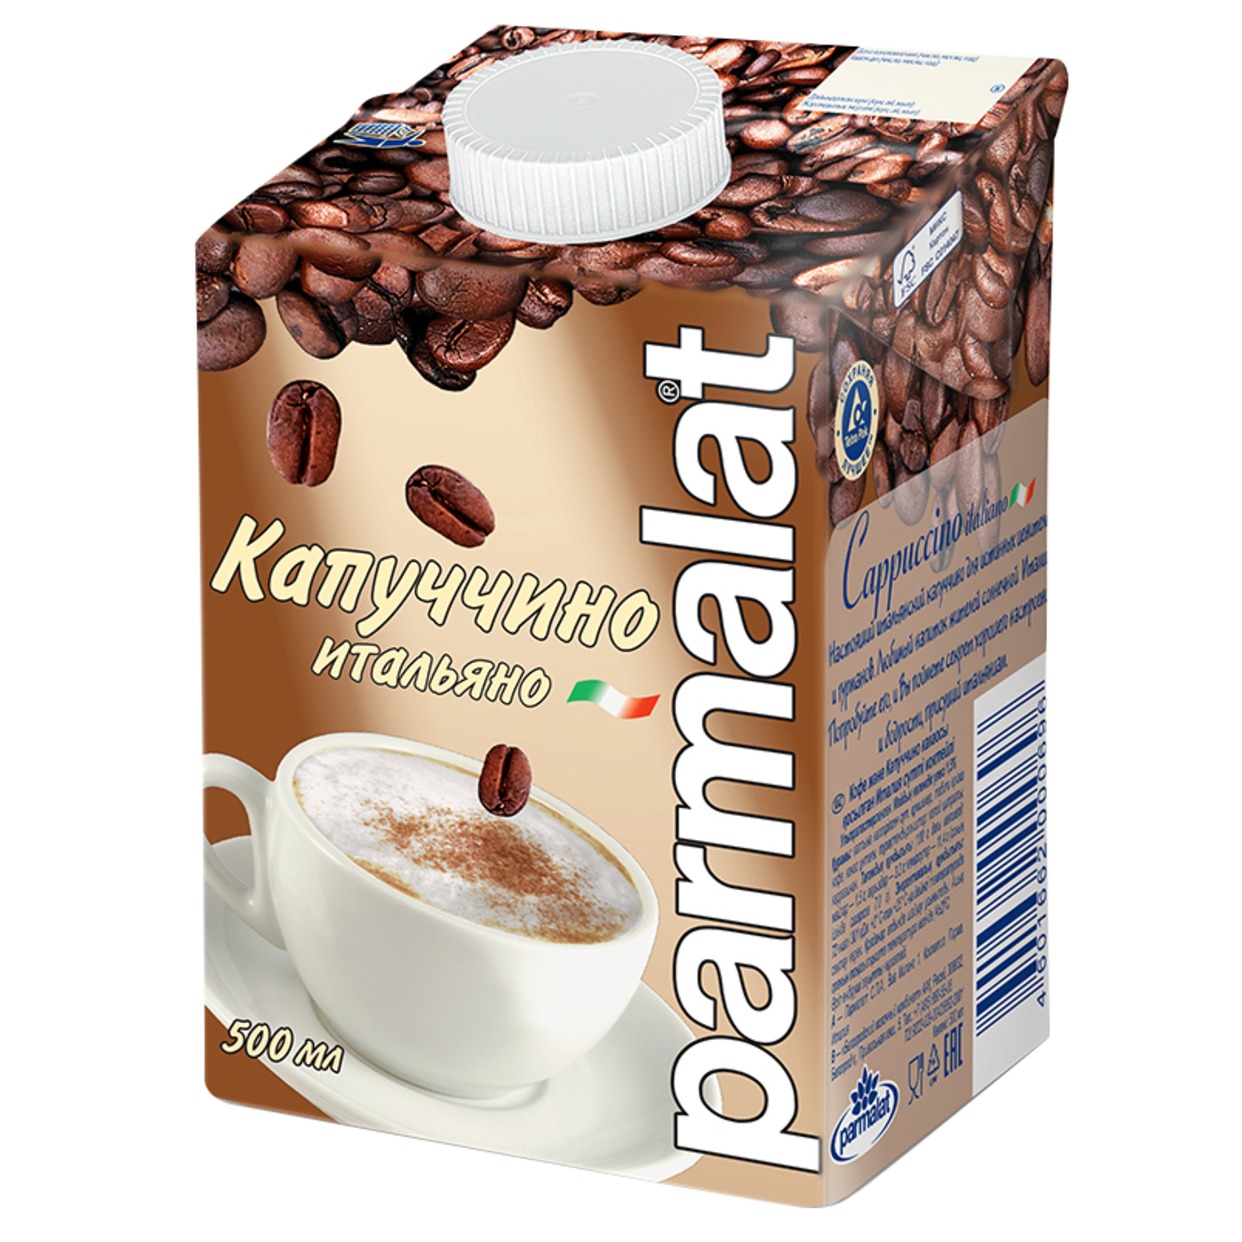 Коктейль молочный Parmalat Капуччино 500мл по акции в Пятерочке